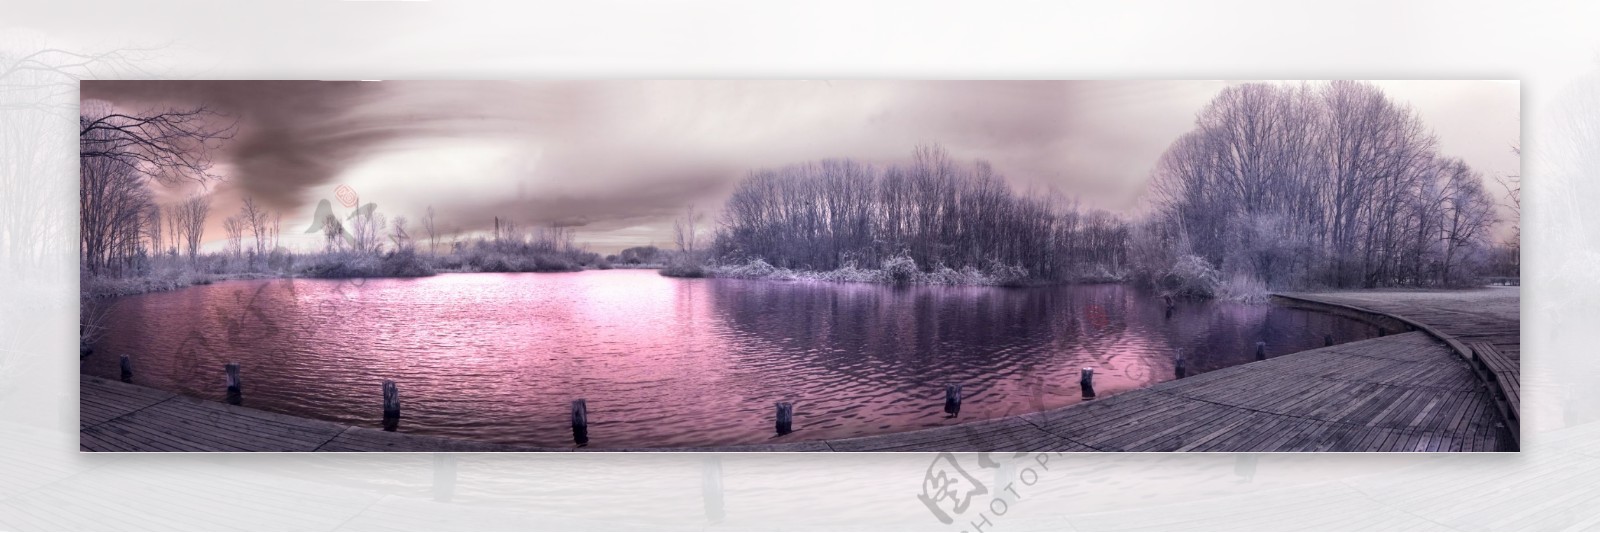 冬季湖泊美景图片